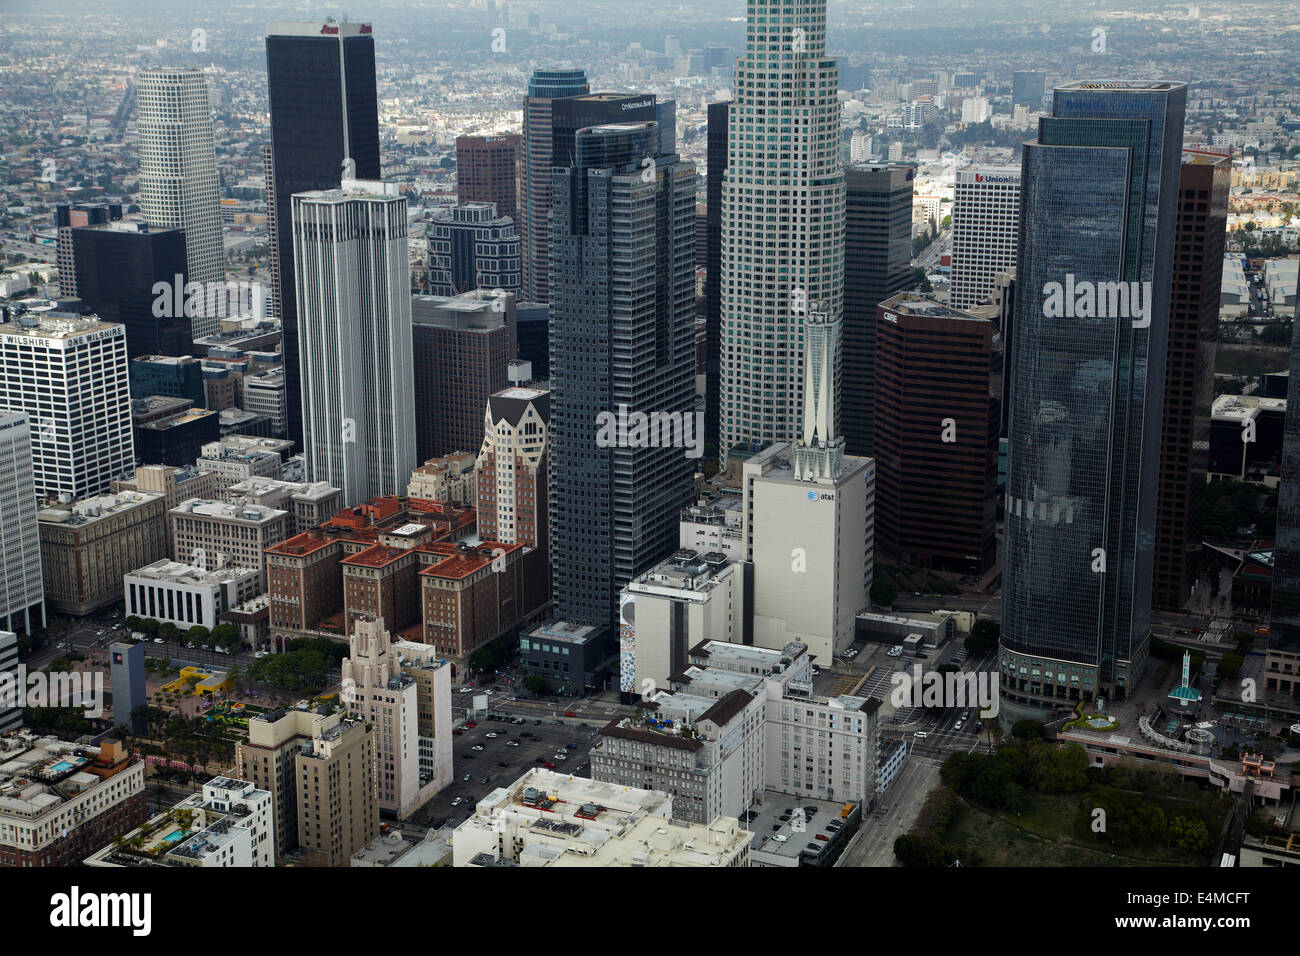 Il centro cittadino di Los Angeles, incluso US Bank Tower 73 piani / 1,018ft / 310m (edificio più alto in California), California, Stati Uniti d'America - ae Foto Stock